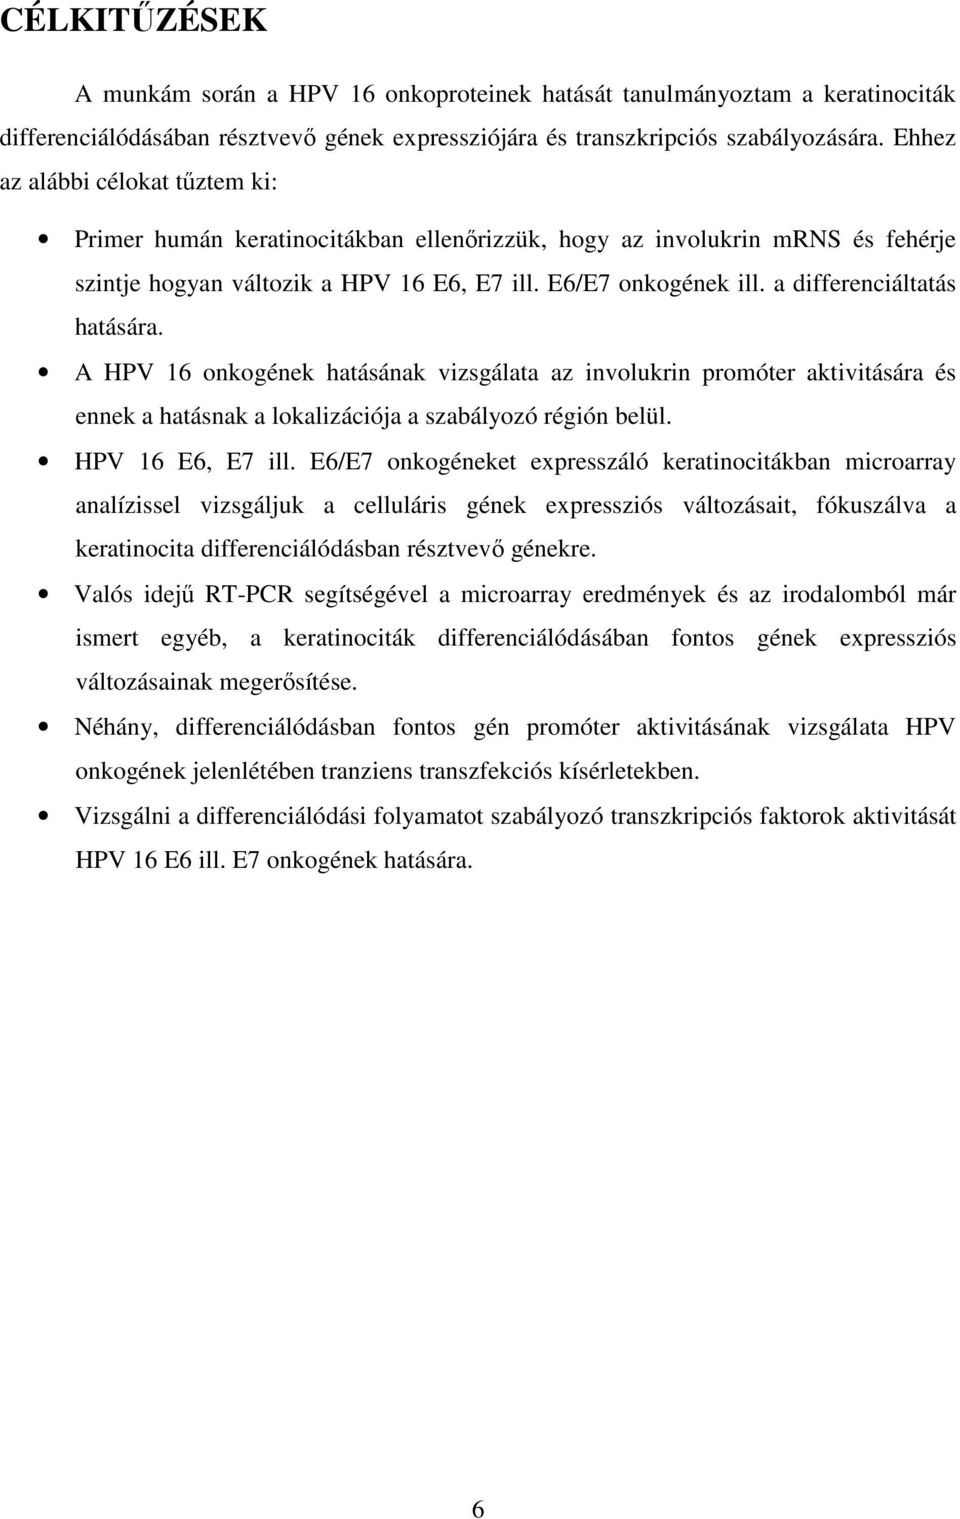 a differenciáltatás hatására. A HPV 16 onkogének hatásának vizsgálata az involukrin promóter aktivitására és ennek a hatásnak a lokalizációja a szabályozó régión belül. HPV 16 E6, E7 ill.